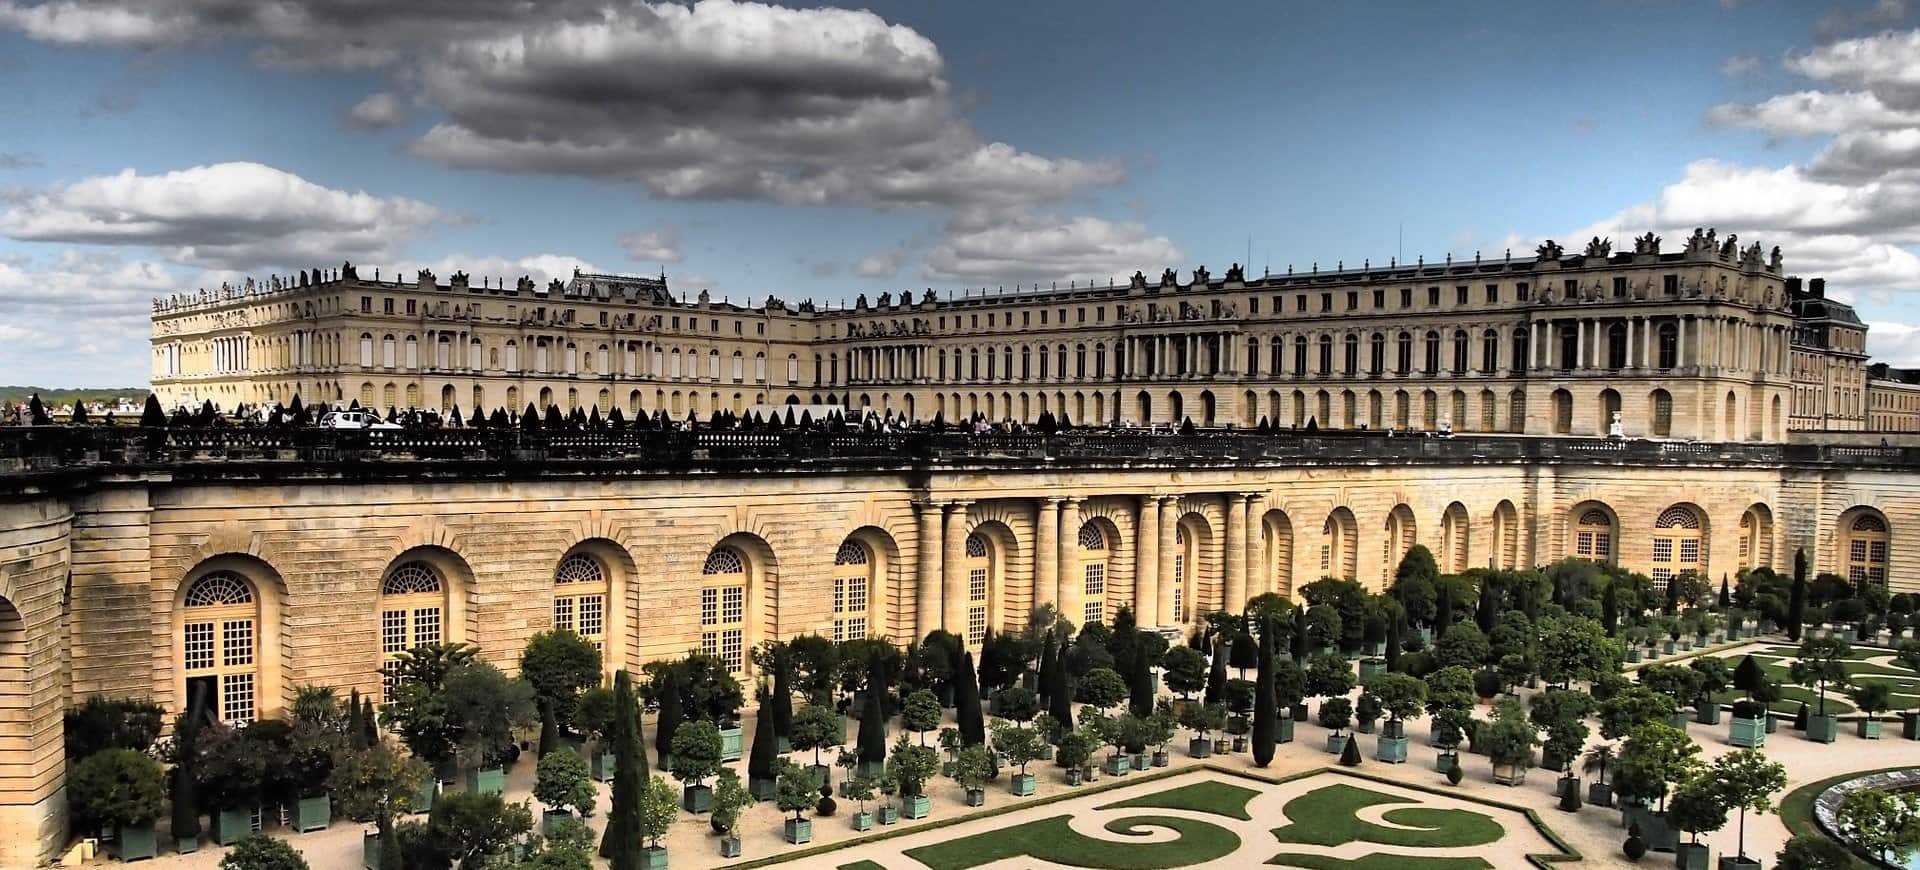 Версаль м. Версальский дворец. Версаль. Музей Версаль Франция. Замок Версаль в Париже.